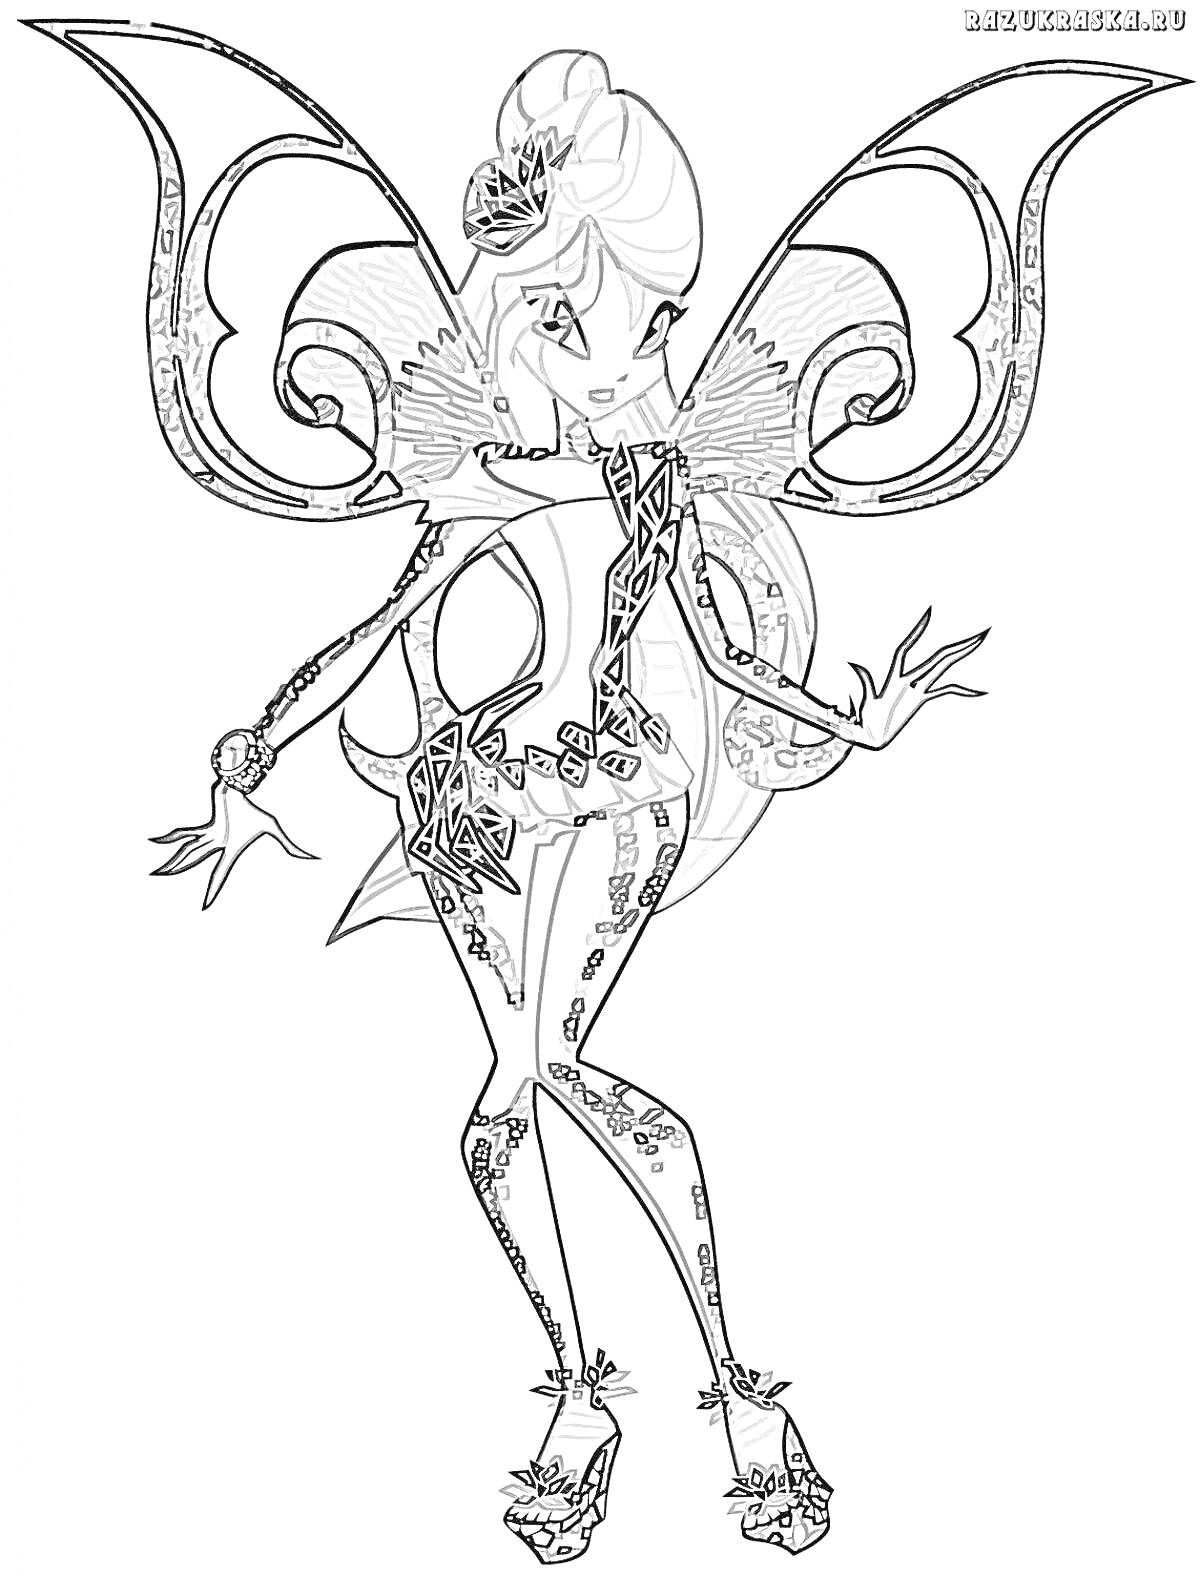 Раскраска Волшебница Тайникс Винкс с большими узорчатыми крыльями в сложном наряде, украшенном кристаллами